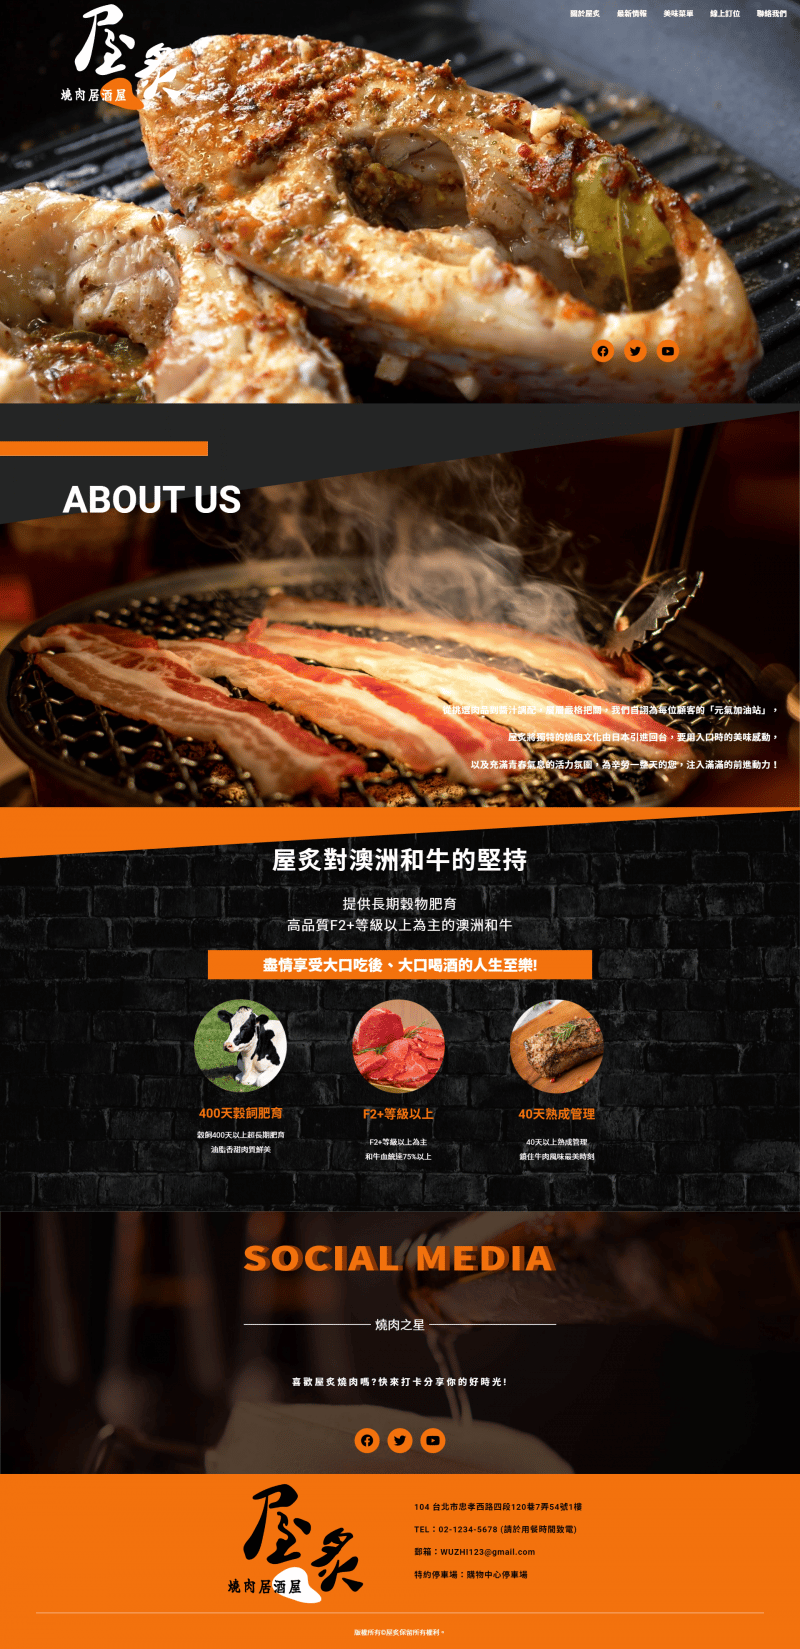 屋炙燒肉居酒屋的網站首頁。